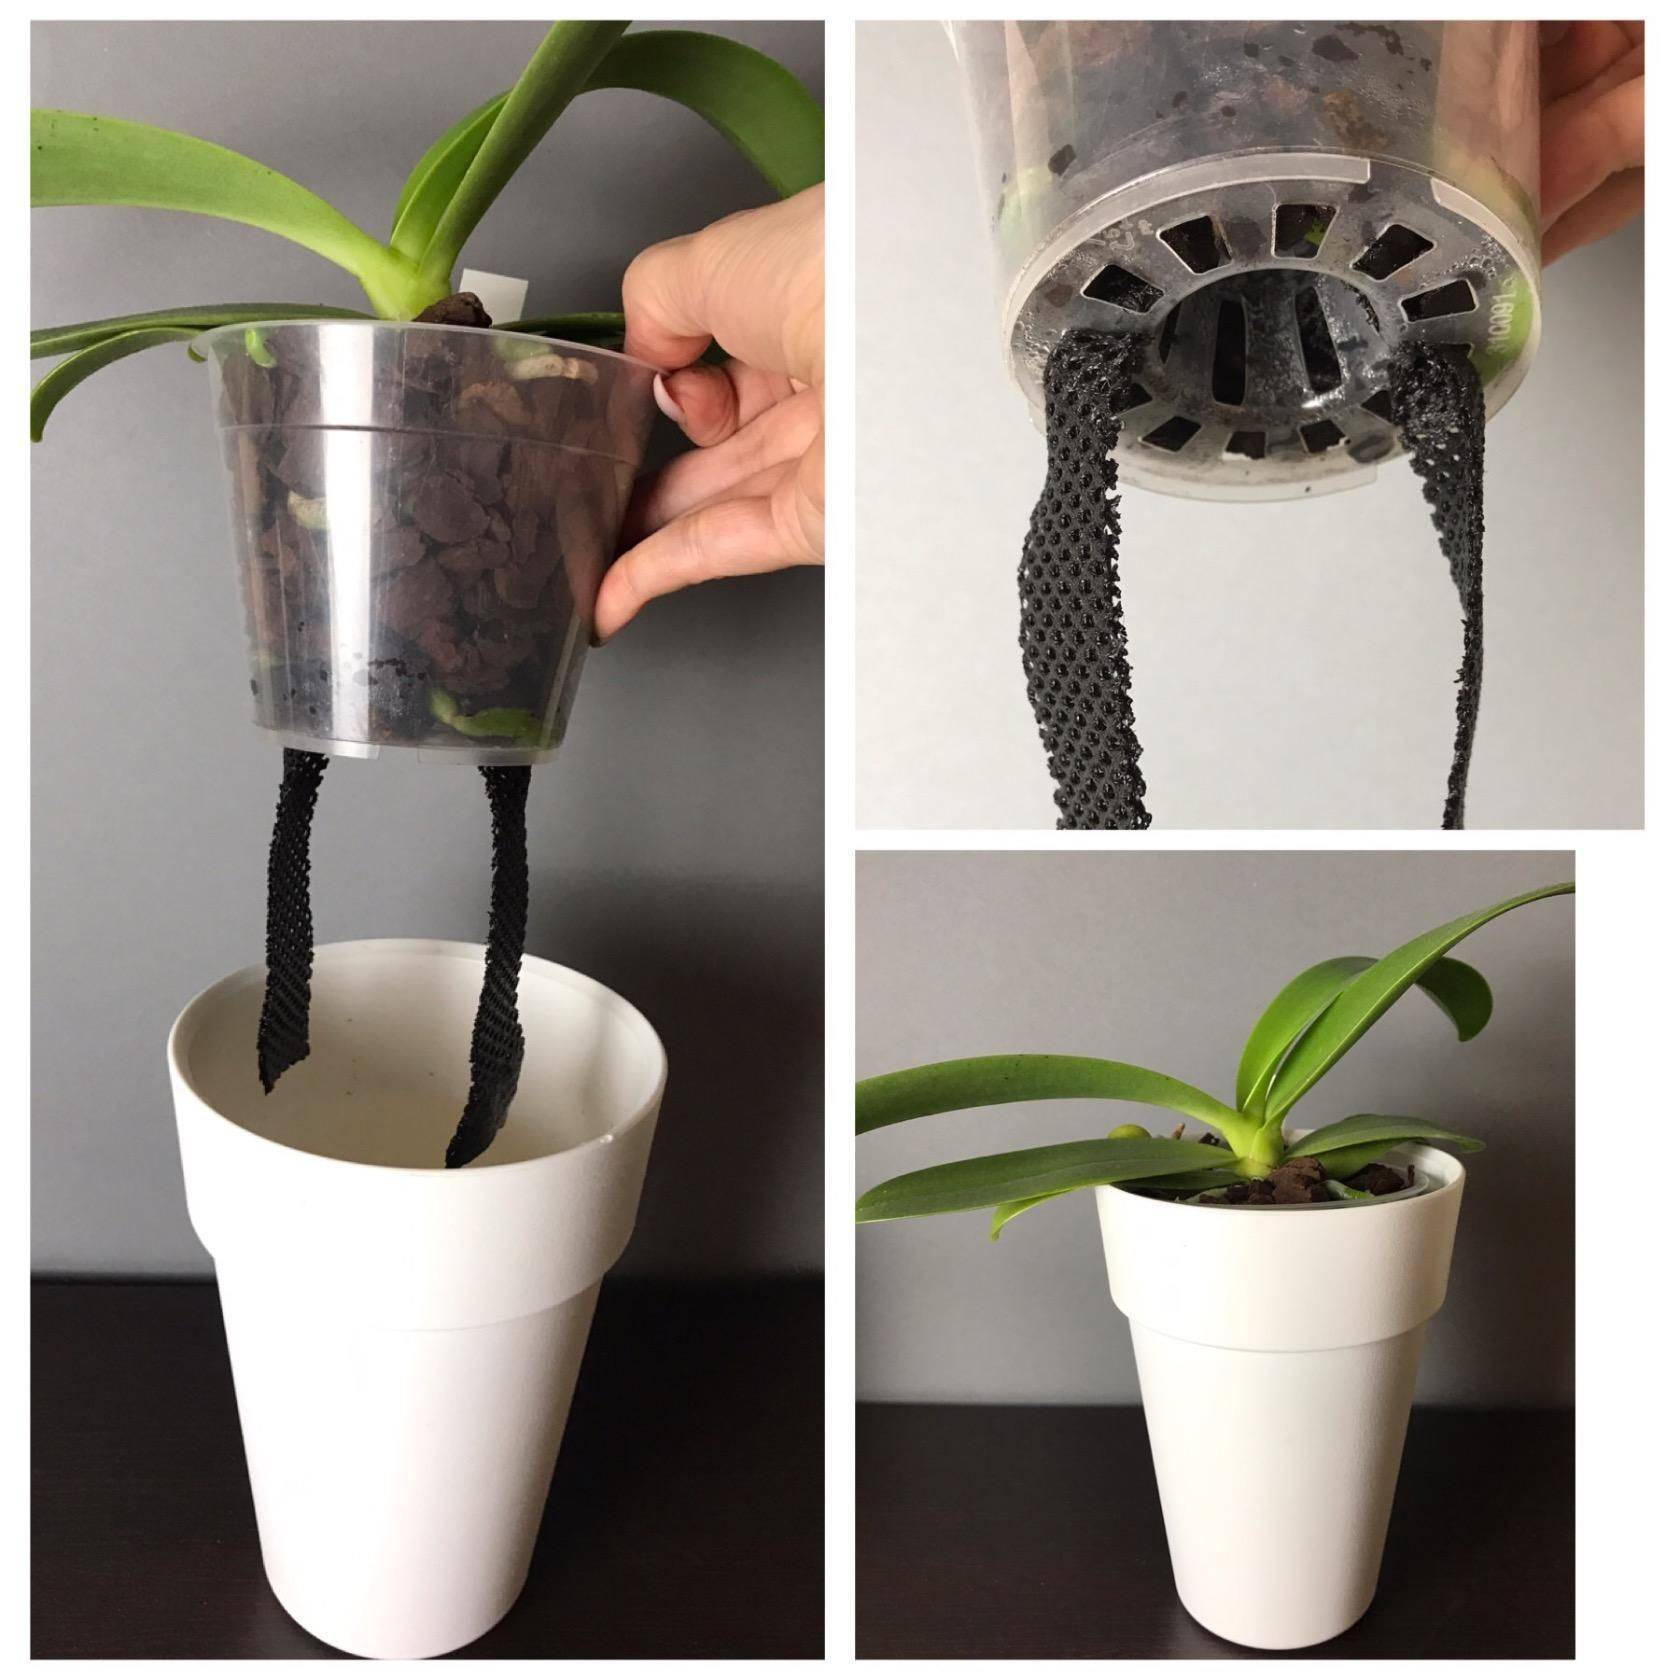 Пересадка орхидей в новый горшок: какой вазон выбрать - большой или маленький, как нужно пересаживать из старого кашпо в новое, как правильно подобрать грунт?